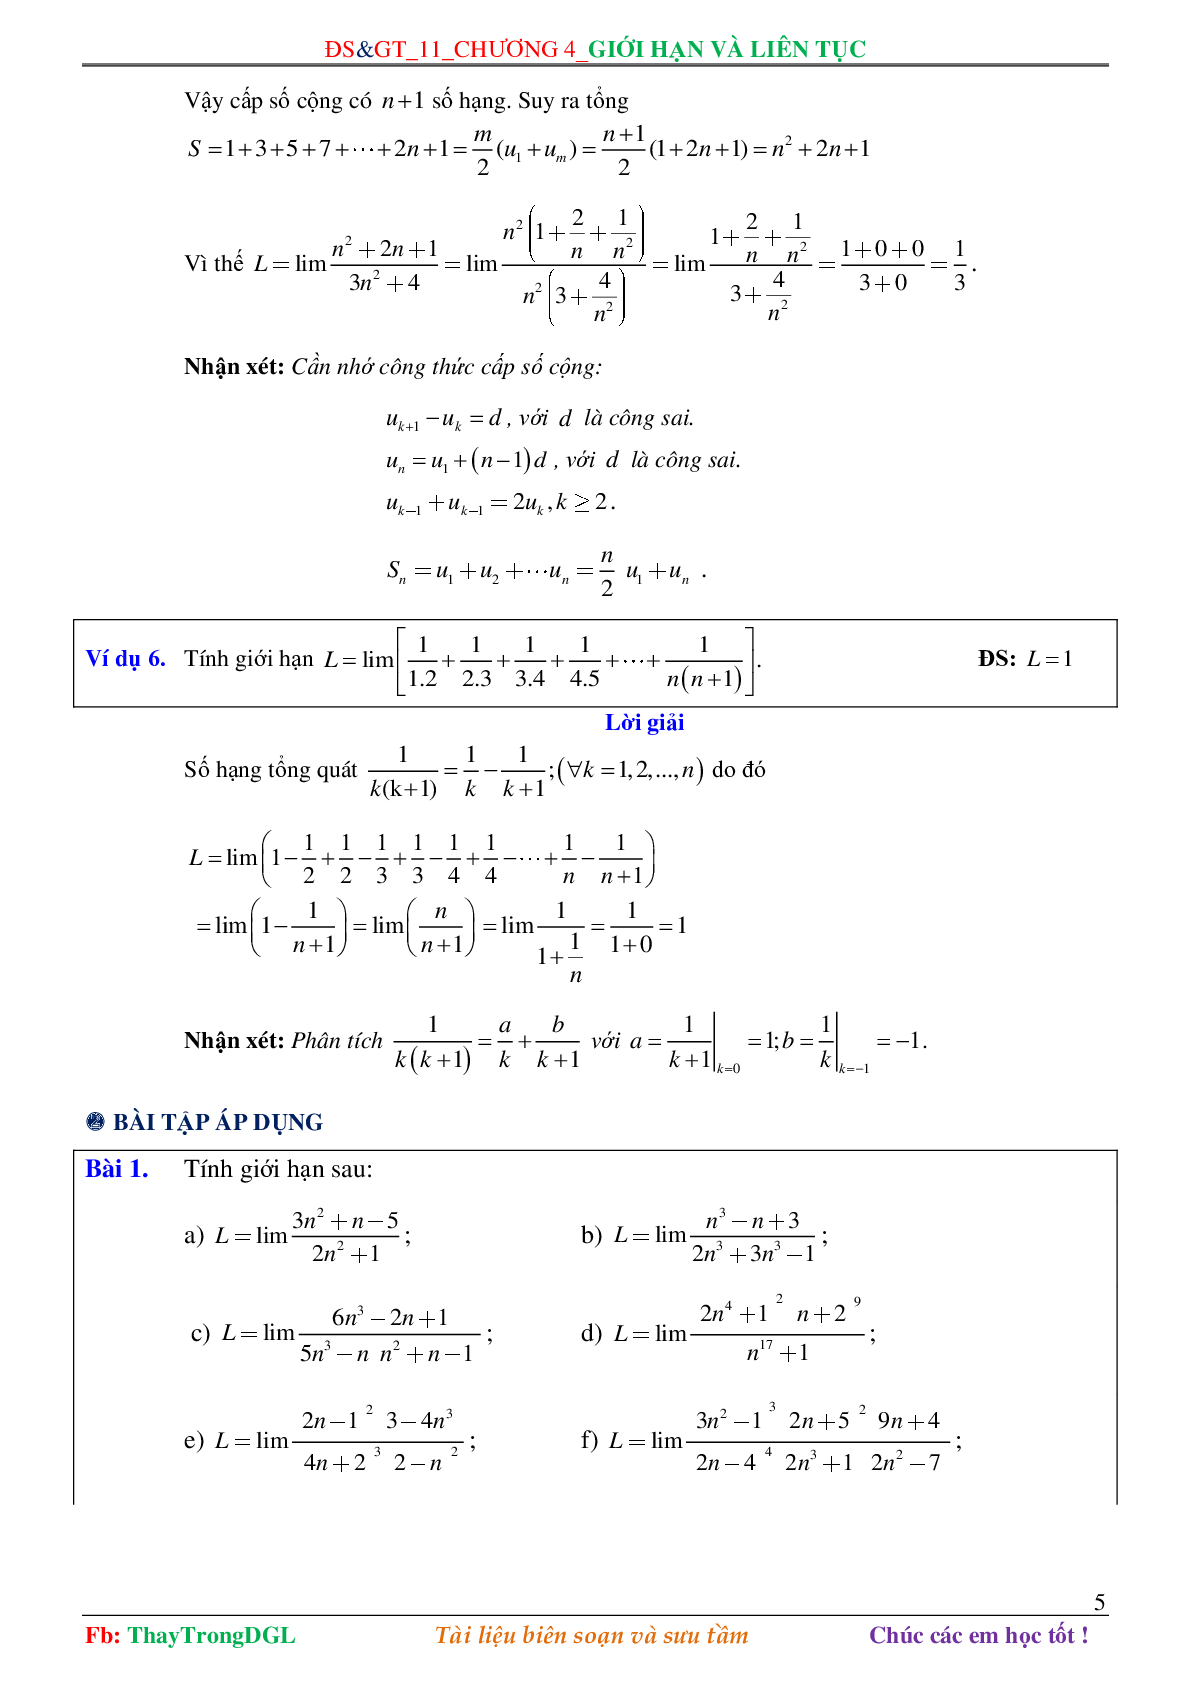 Các dạng toán về Giới hạn và liên tục (có bài tập kèm theo) (trang 5)